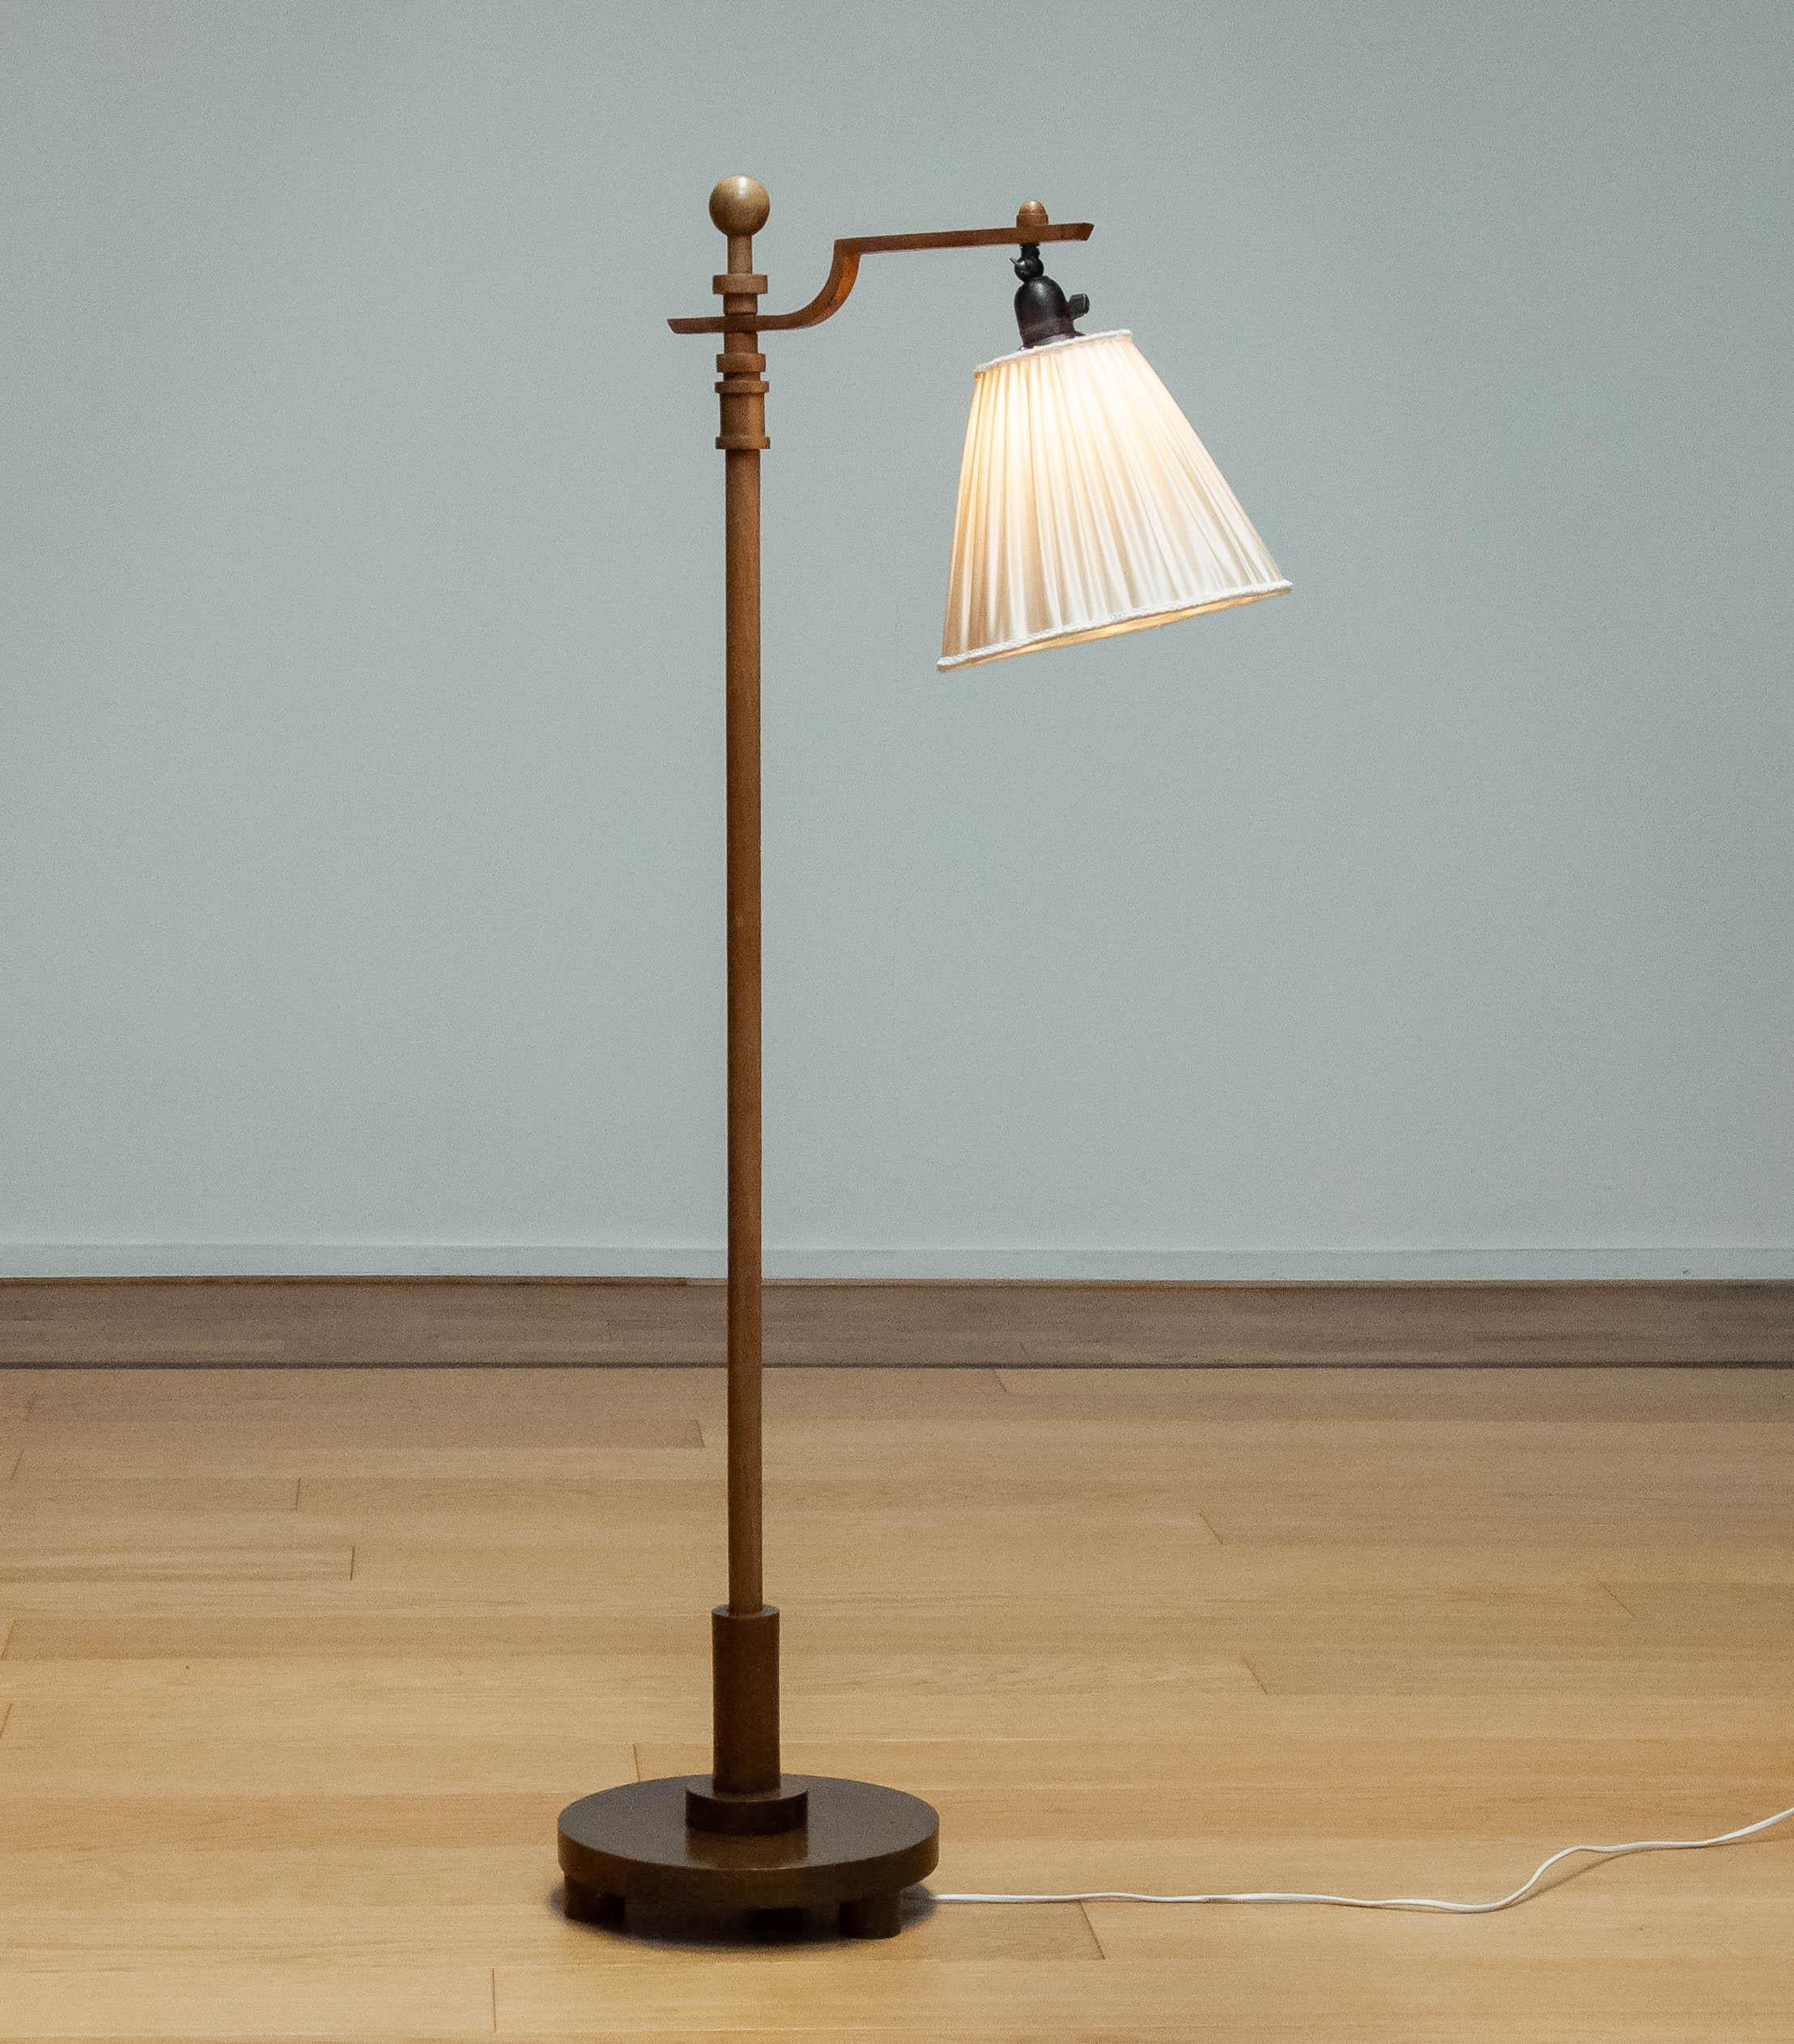 Magnifique lampadaire de designer suédois de la période Art Déco des années 1930 en noyer. Le lampadaire est équipé d'un raccord à vis E27 / E28 et l'interrupteur est monté dans le raccord à vis. Allover en bon état. 
Ce magnifique lampadaire attire